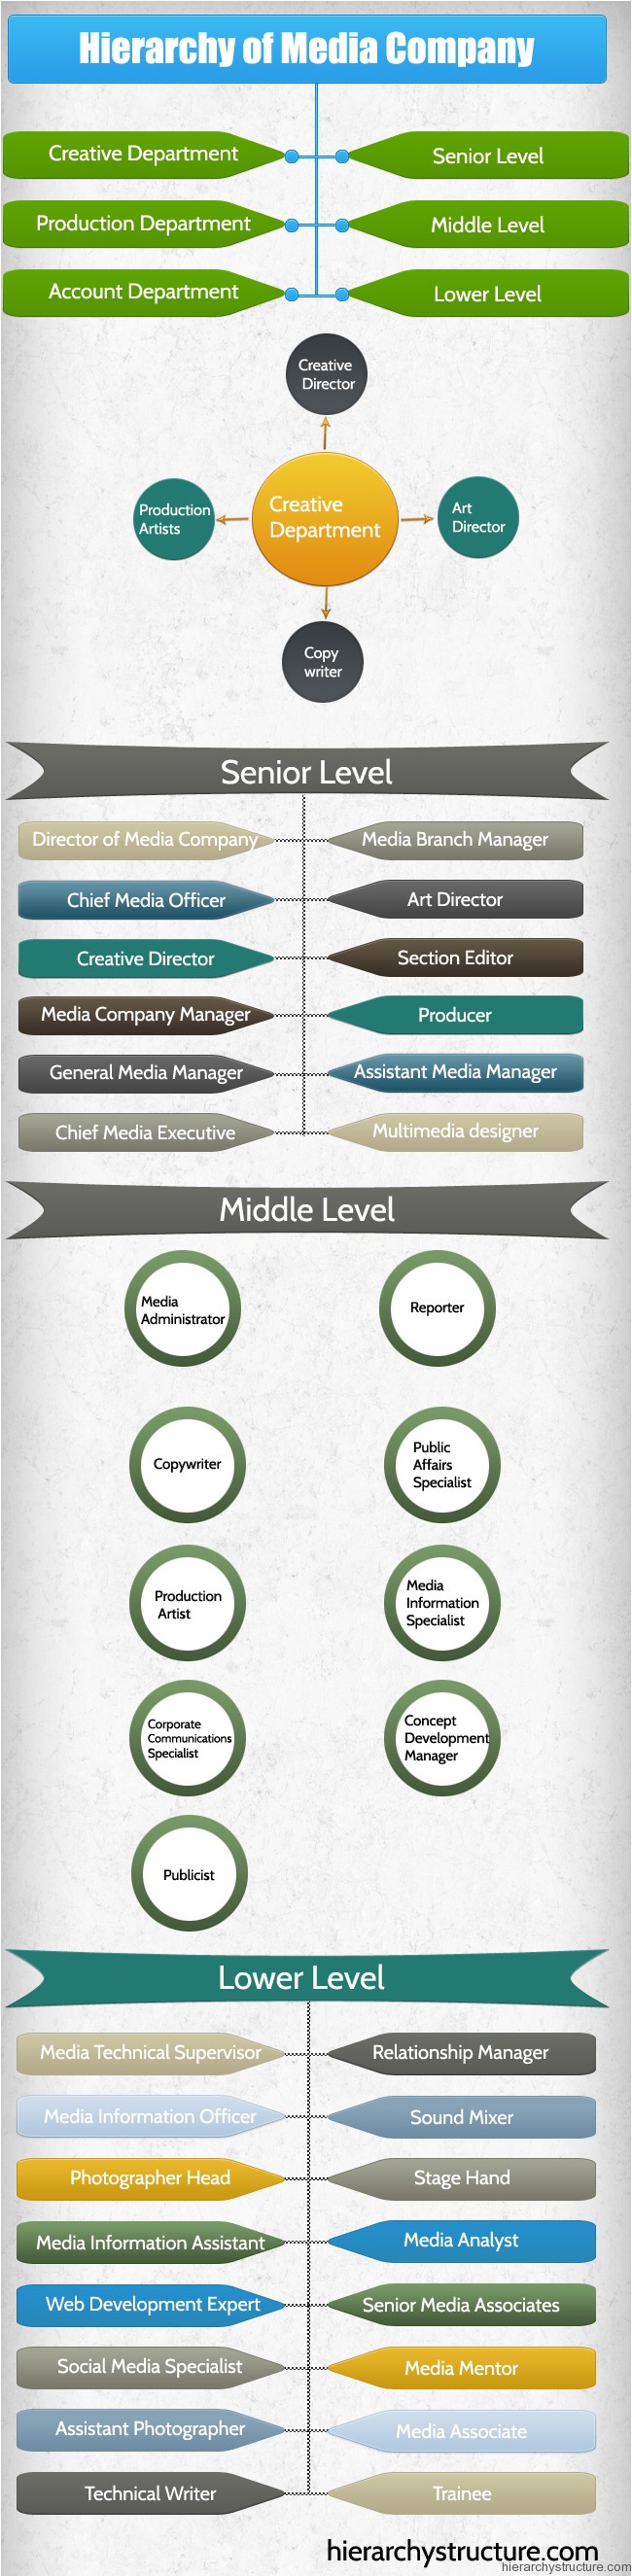 Hierarchy of Media Company